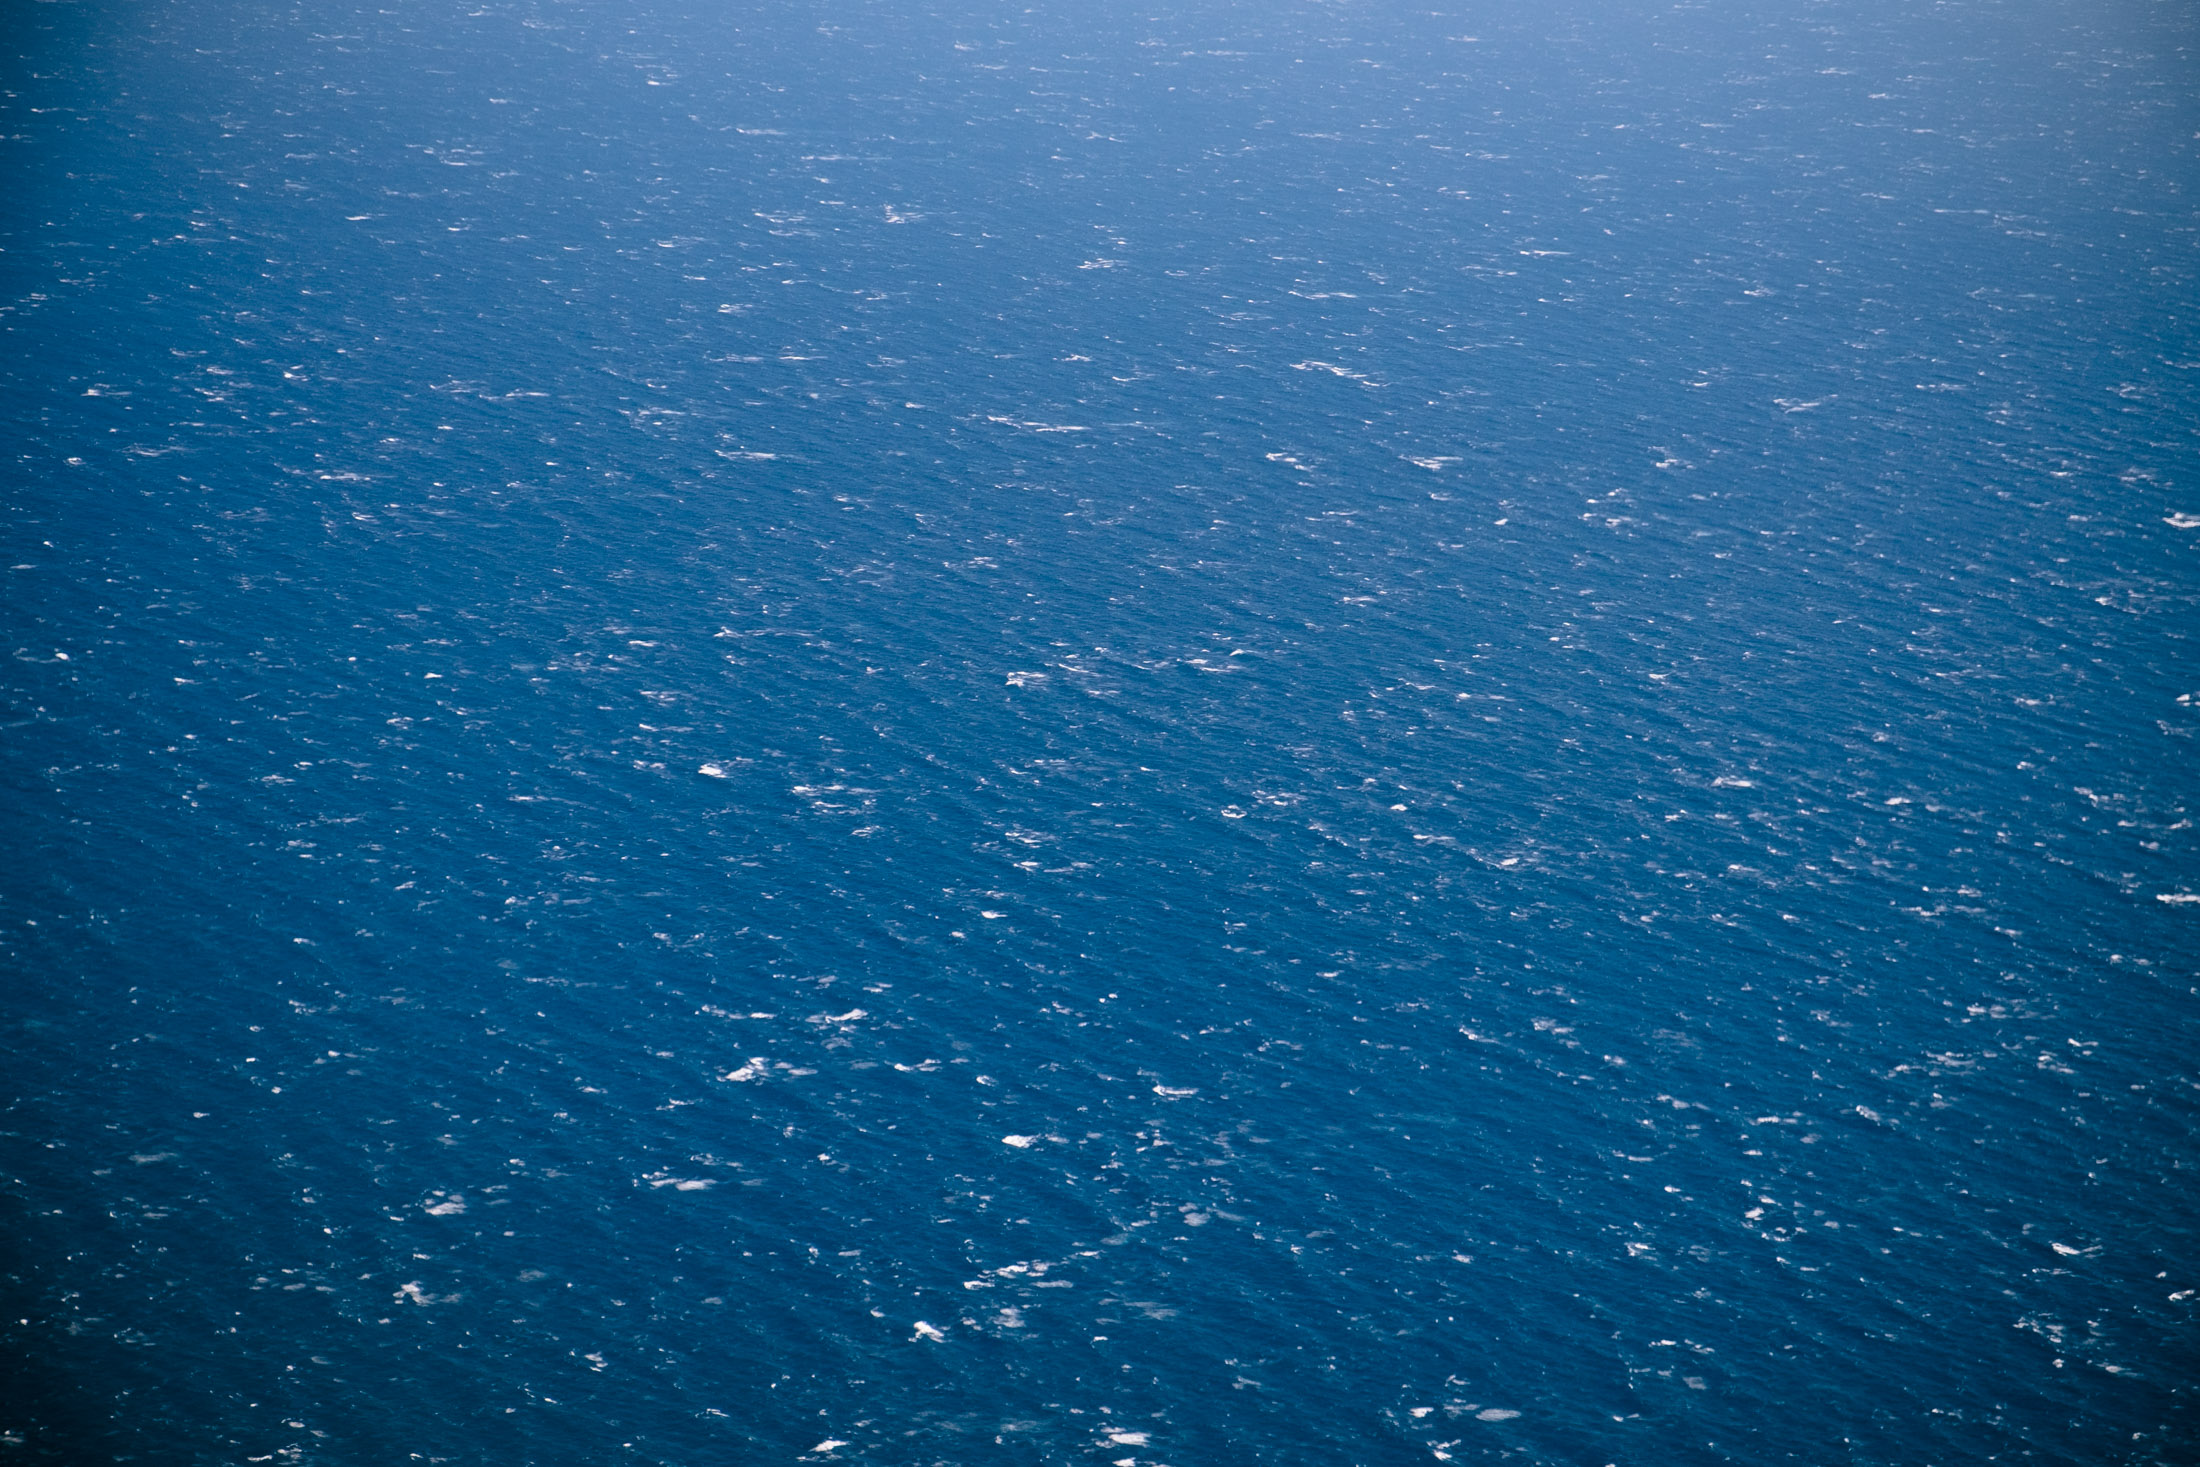 Aerial view of the Mediterranean ocean